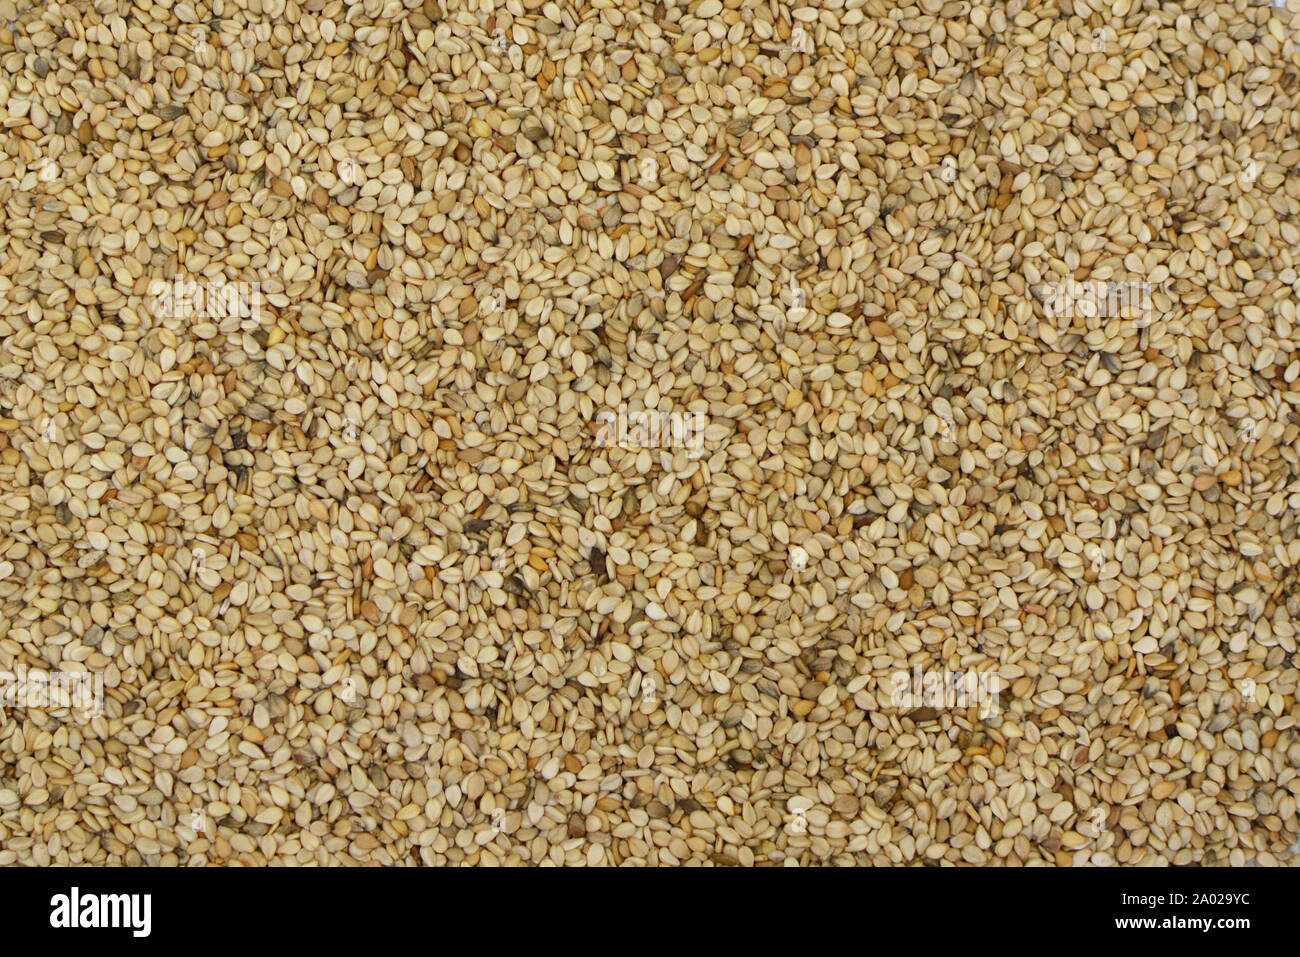 Ansicht von oben Hintergrund mit weißen Sesamsamen Stockfoto